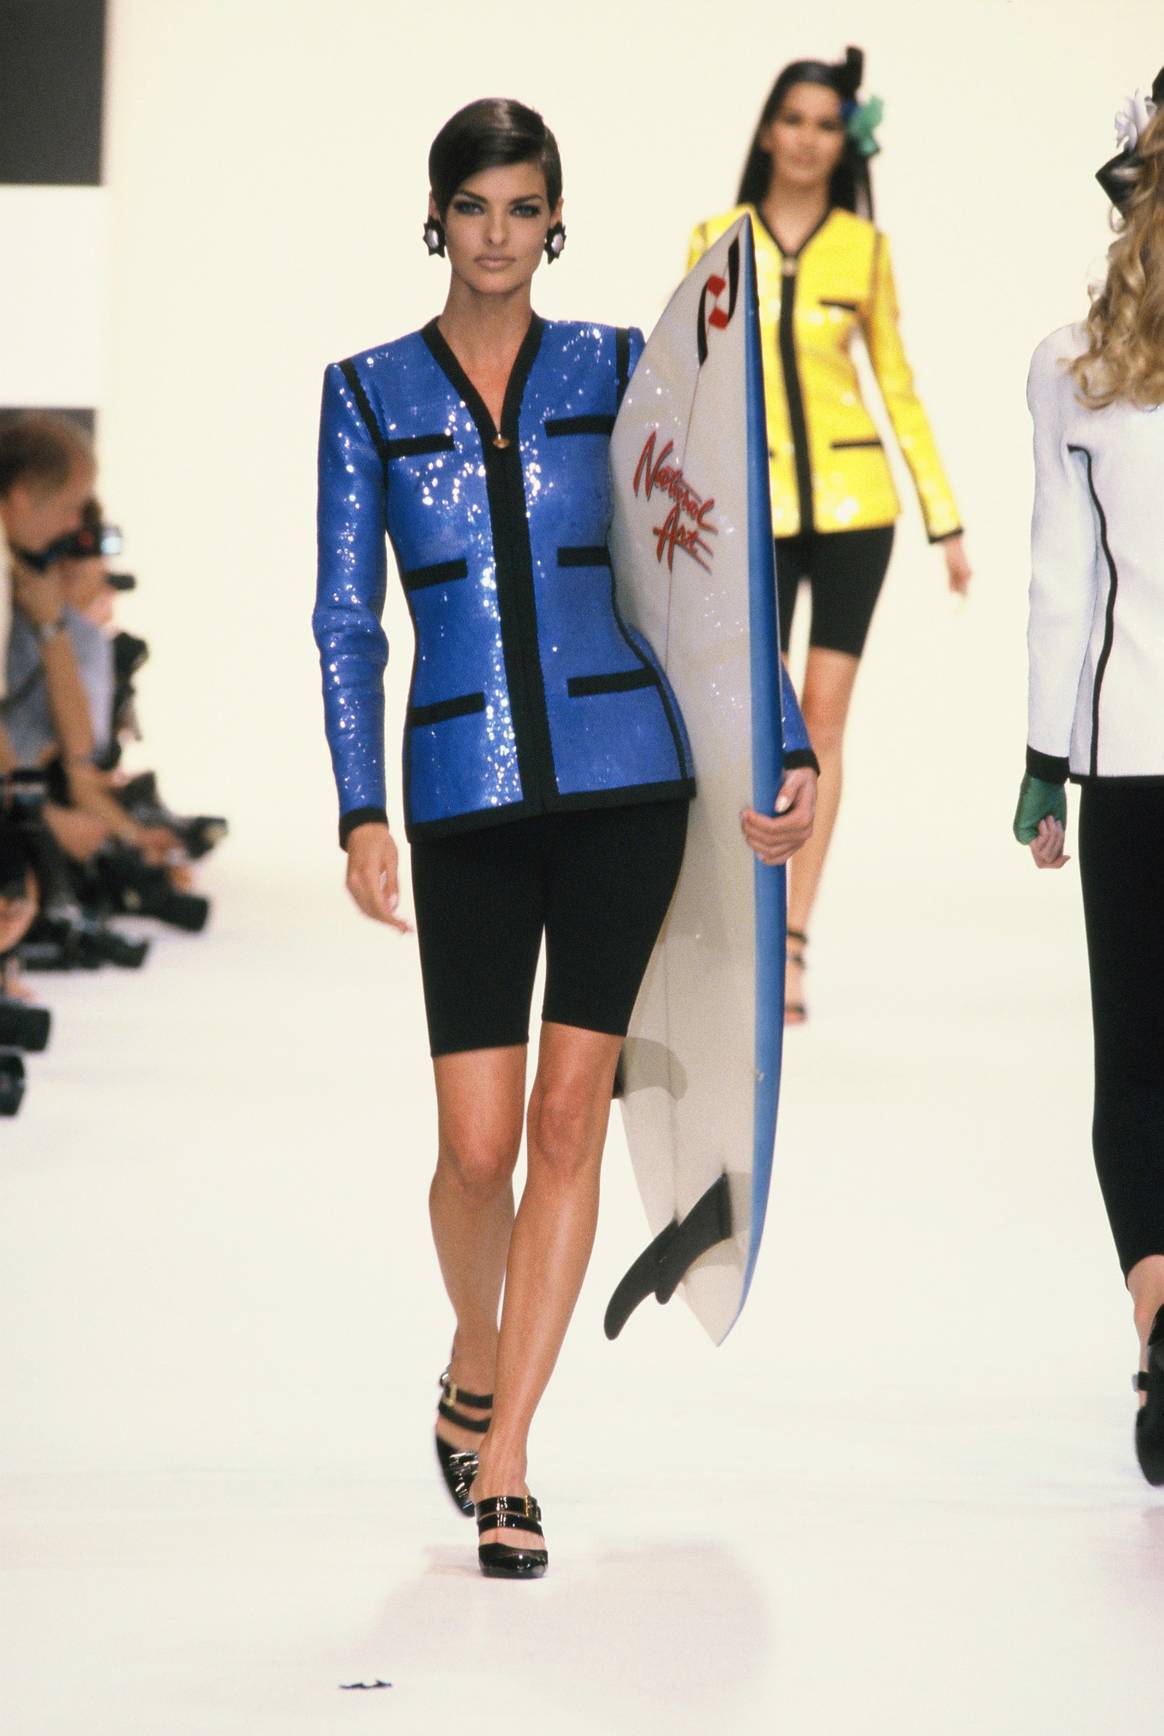 Crédit : Ensemble tailleur « Surf » et planche, Chanel par Karl Lagerfeld Printemps - Eté 1991. © CHANEL / Linda Evangelista / Collection prêt-à -porter Printemps - Été 1991